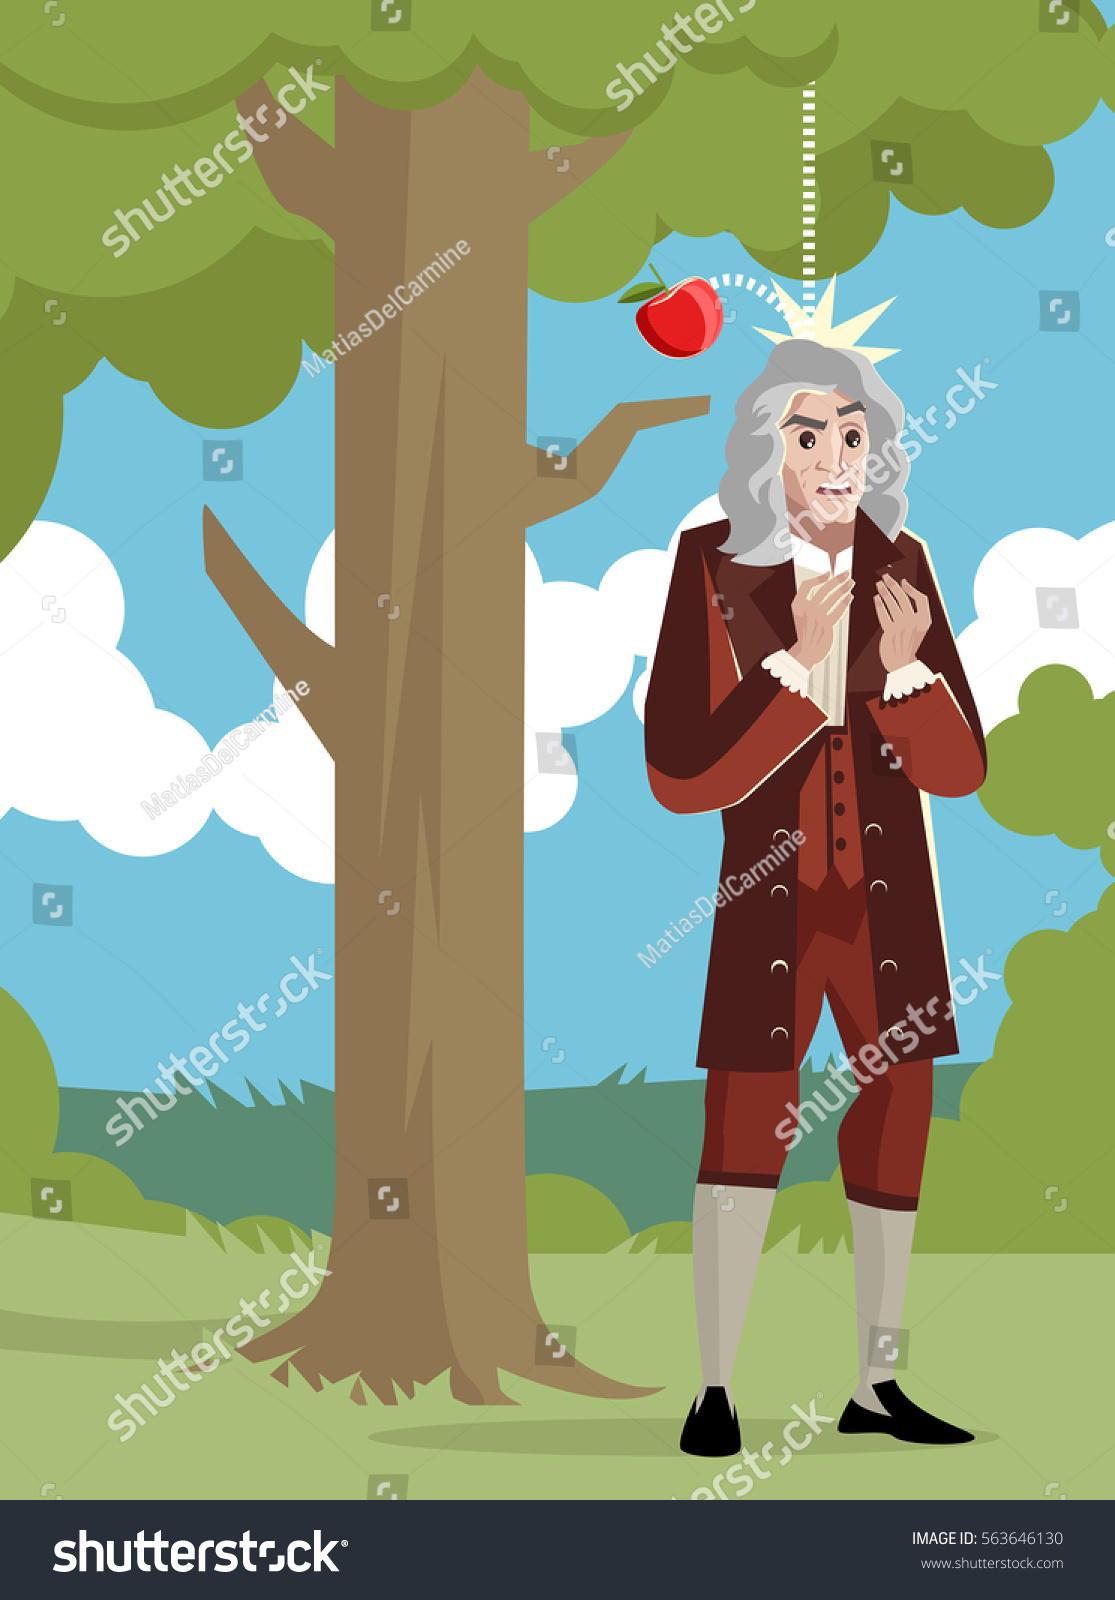 На Ньютона упало яблоко